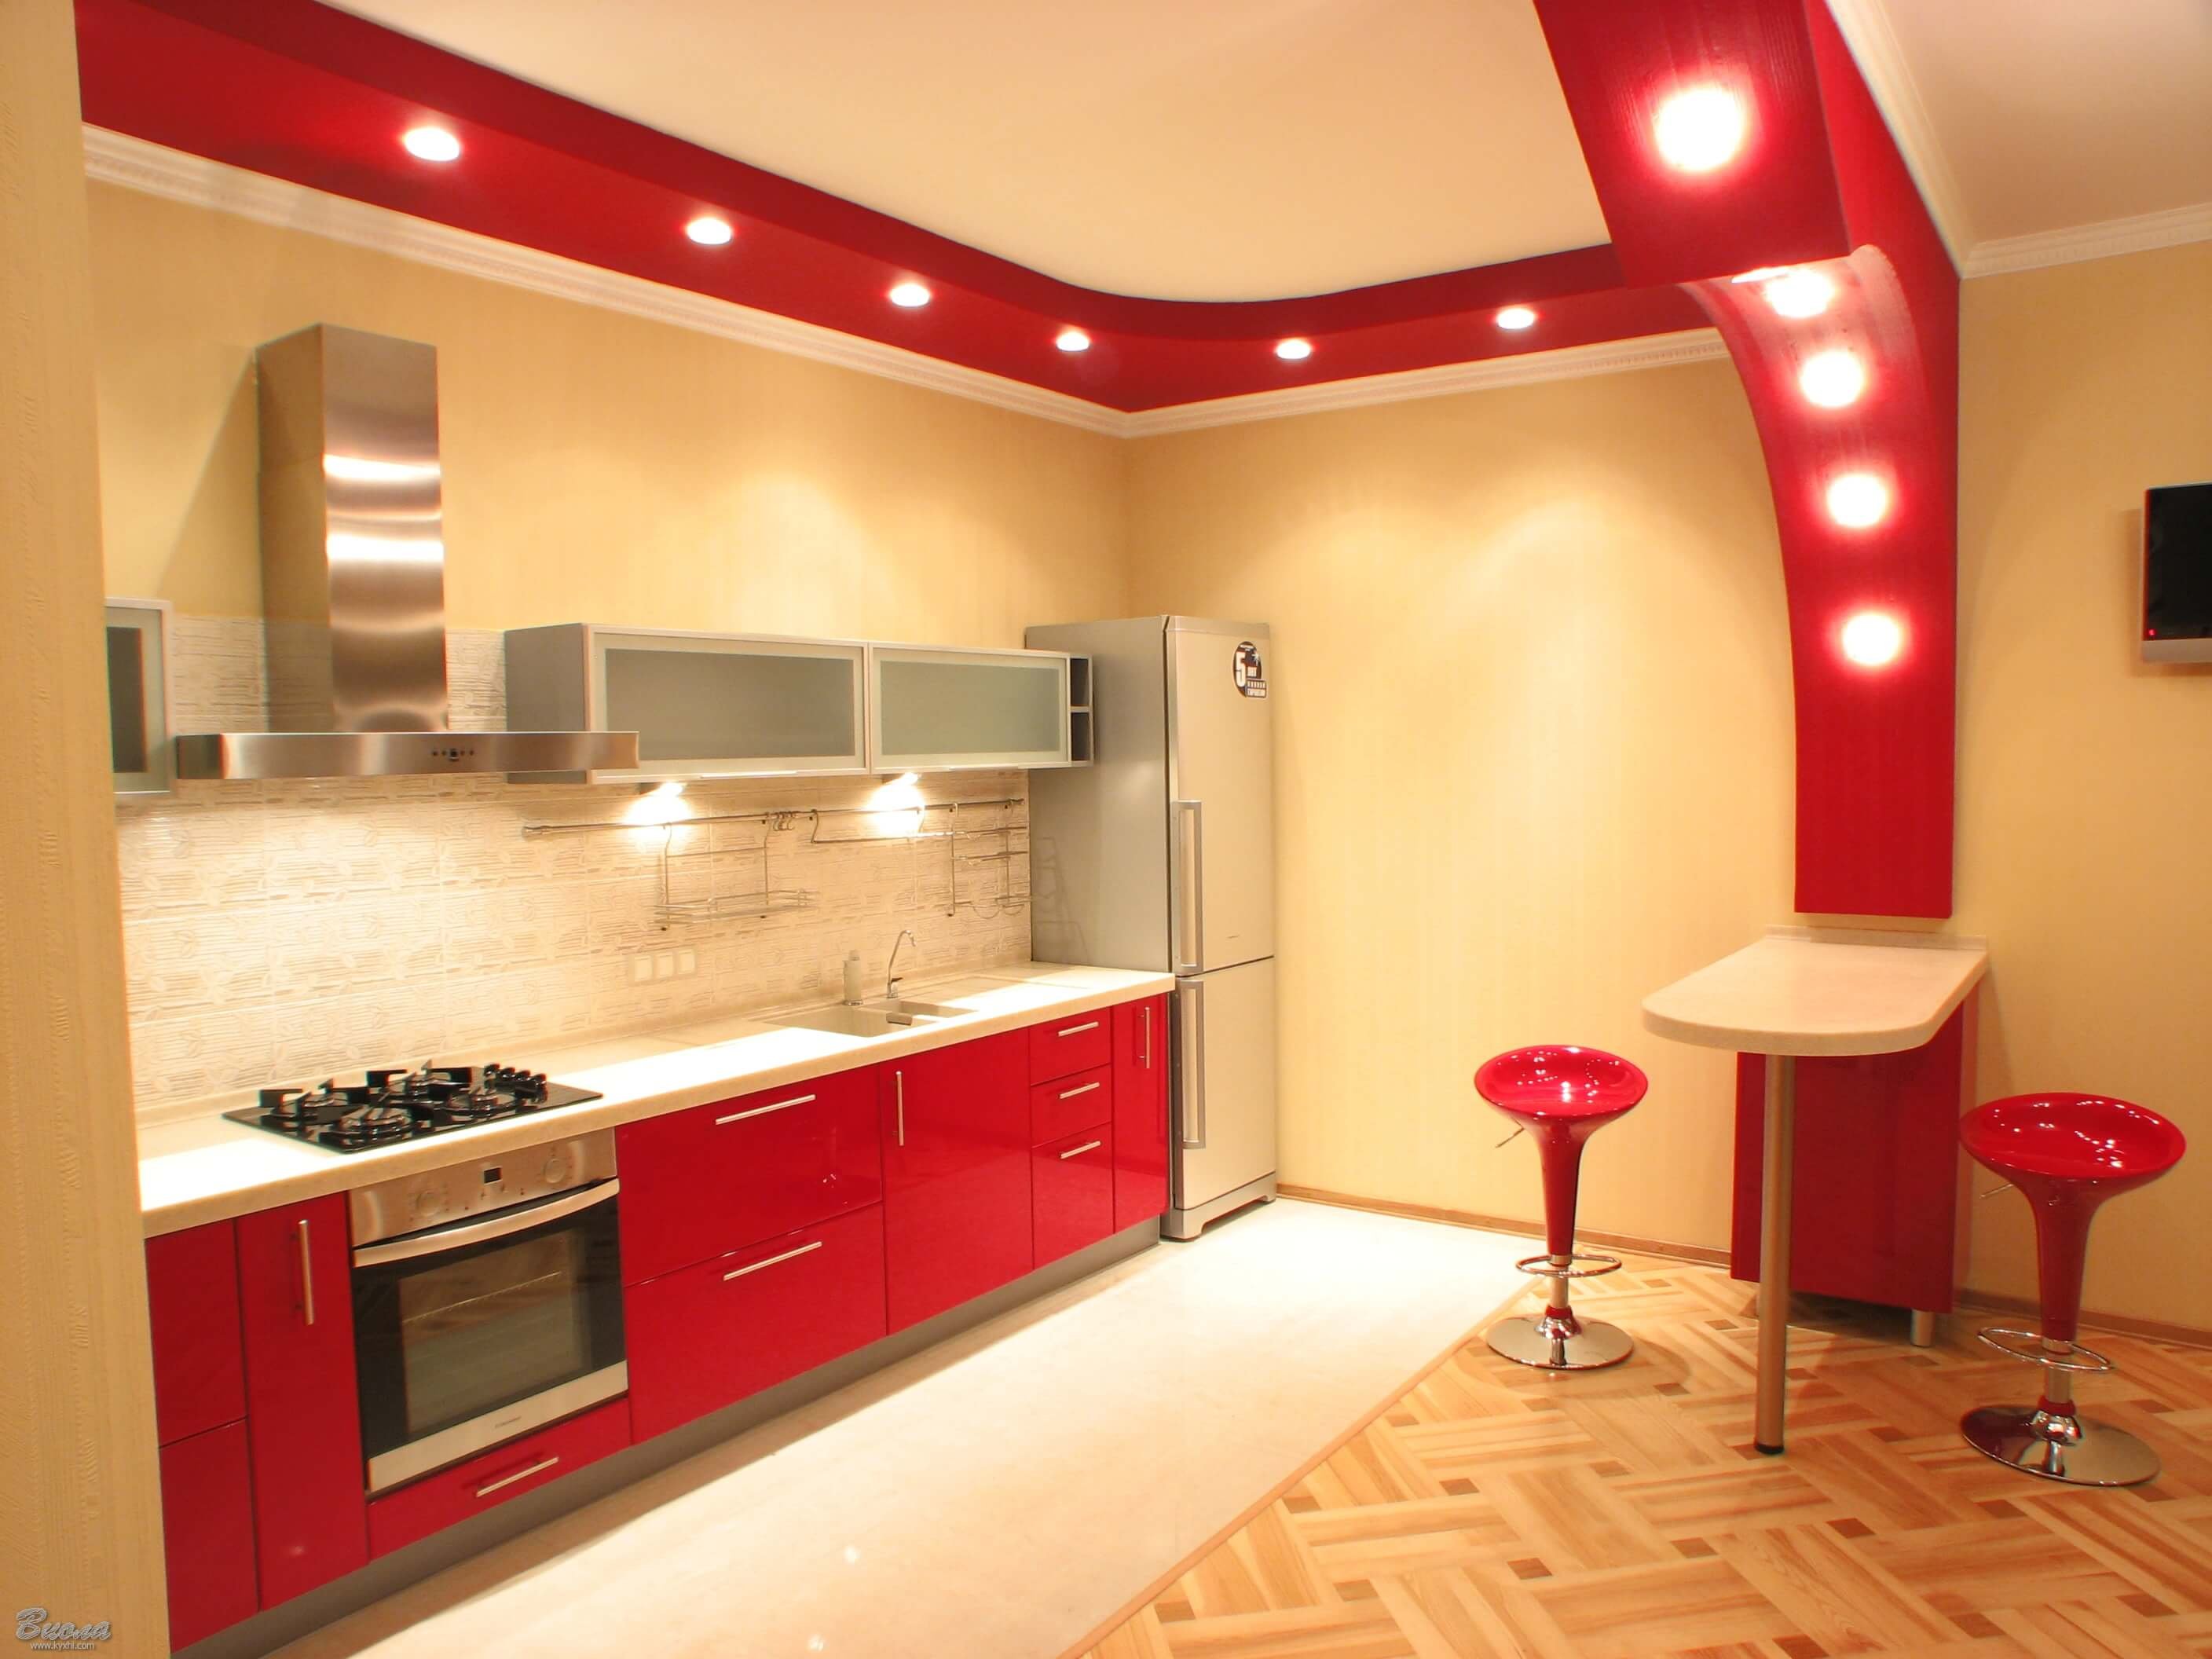 Ремонт кухни гарнитур. Красный потолок на кухне. Кухня в потолок. Евроремонт кухня с барной стойкой. Кухонный гарнитур красный с барной стойкой.